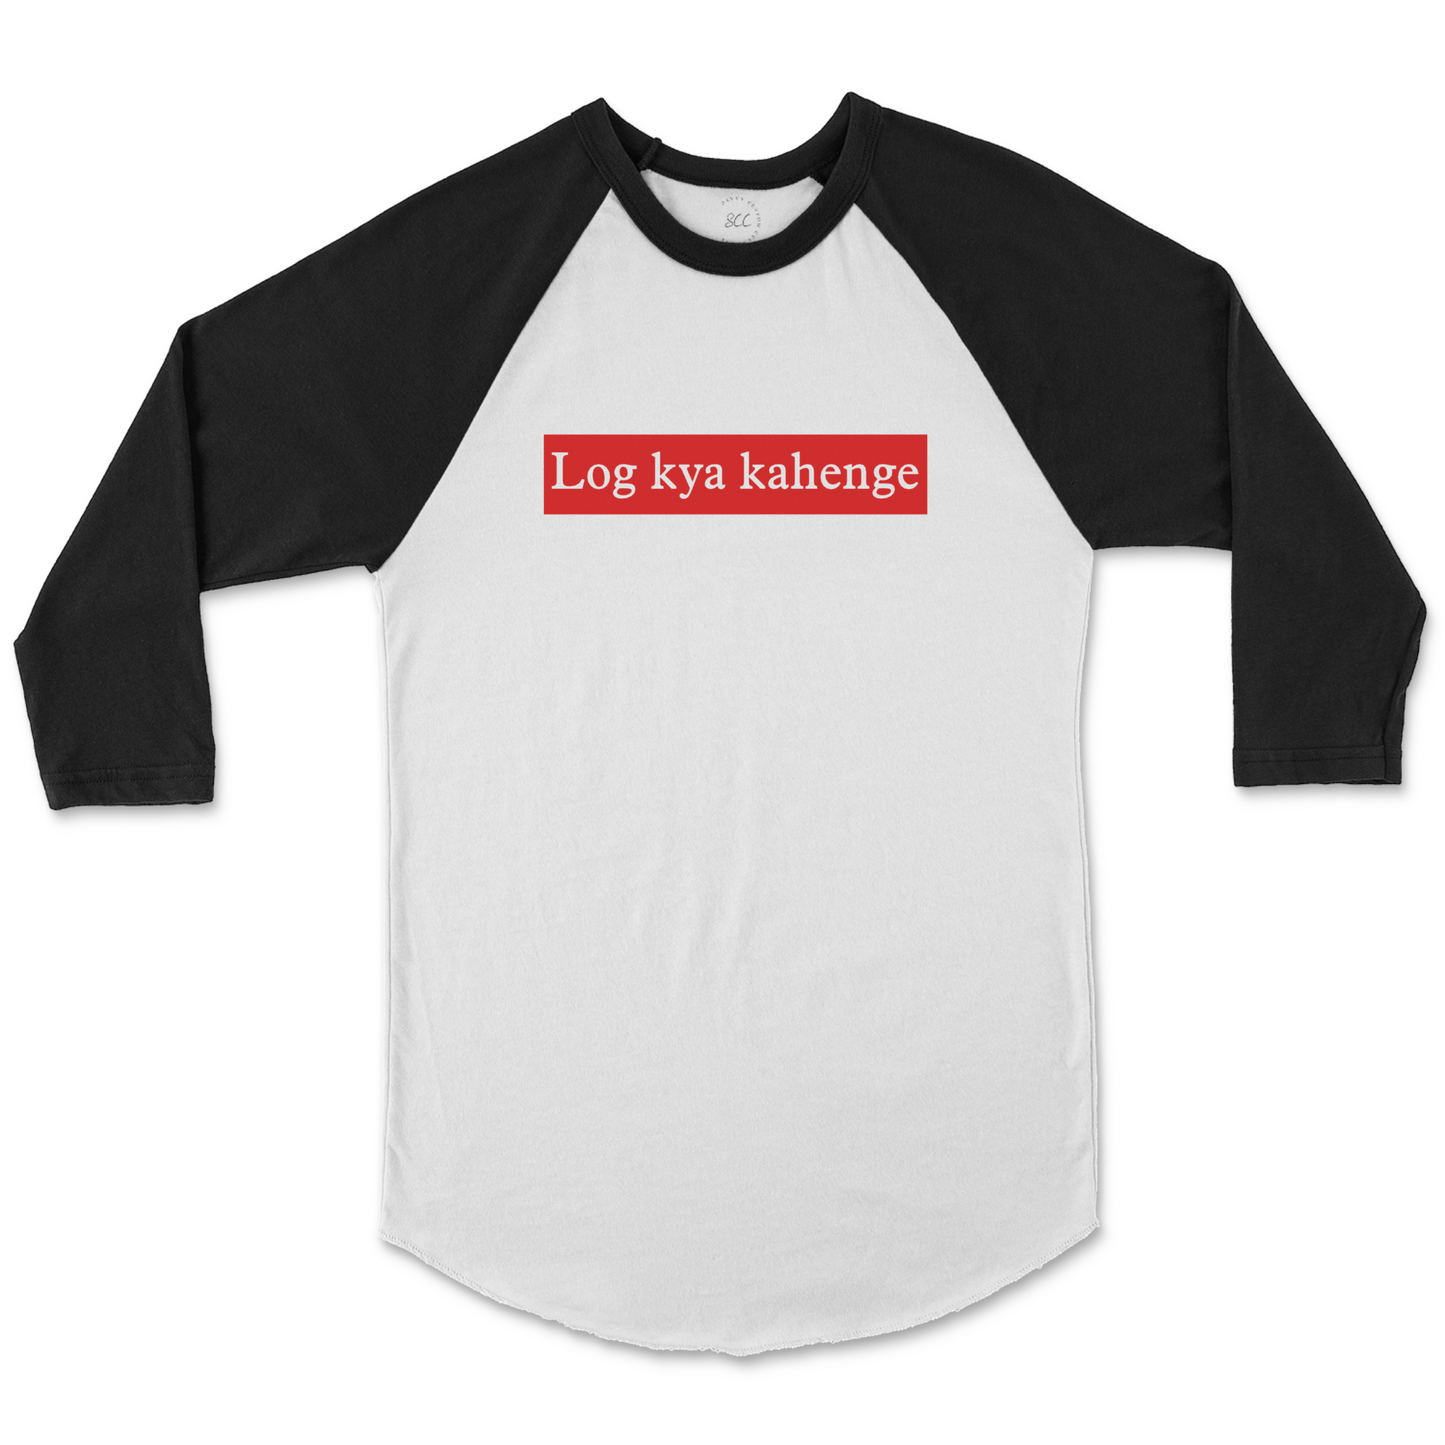 Log kya kahenge - Unisex Raglan Baseball T-Shirt